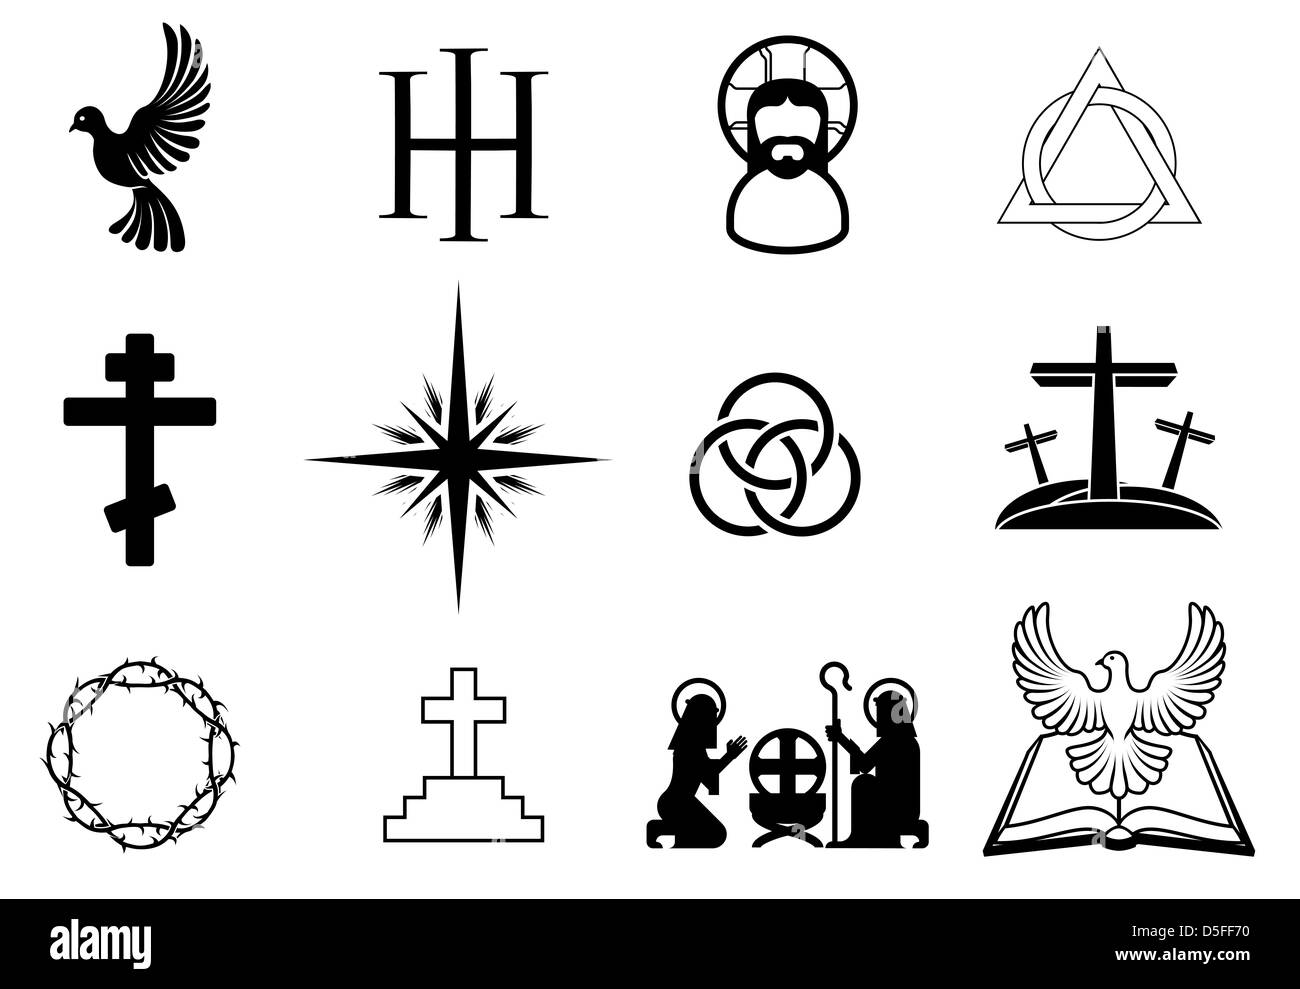 Un conjunto de signos y símbolos religiosos cristianos Foto de stock